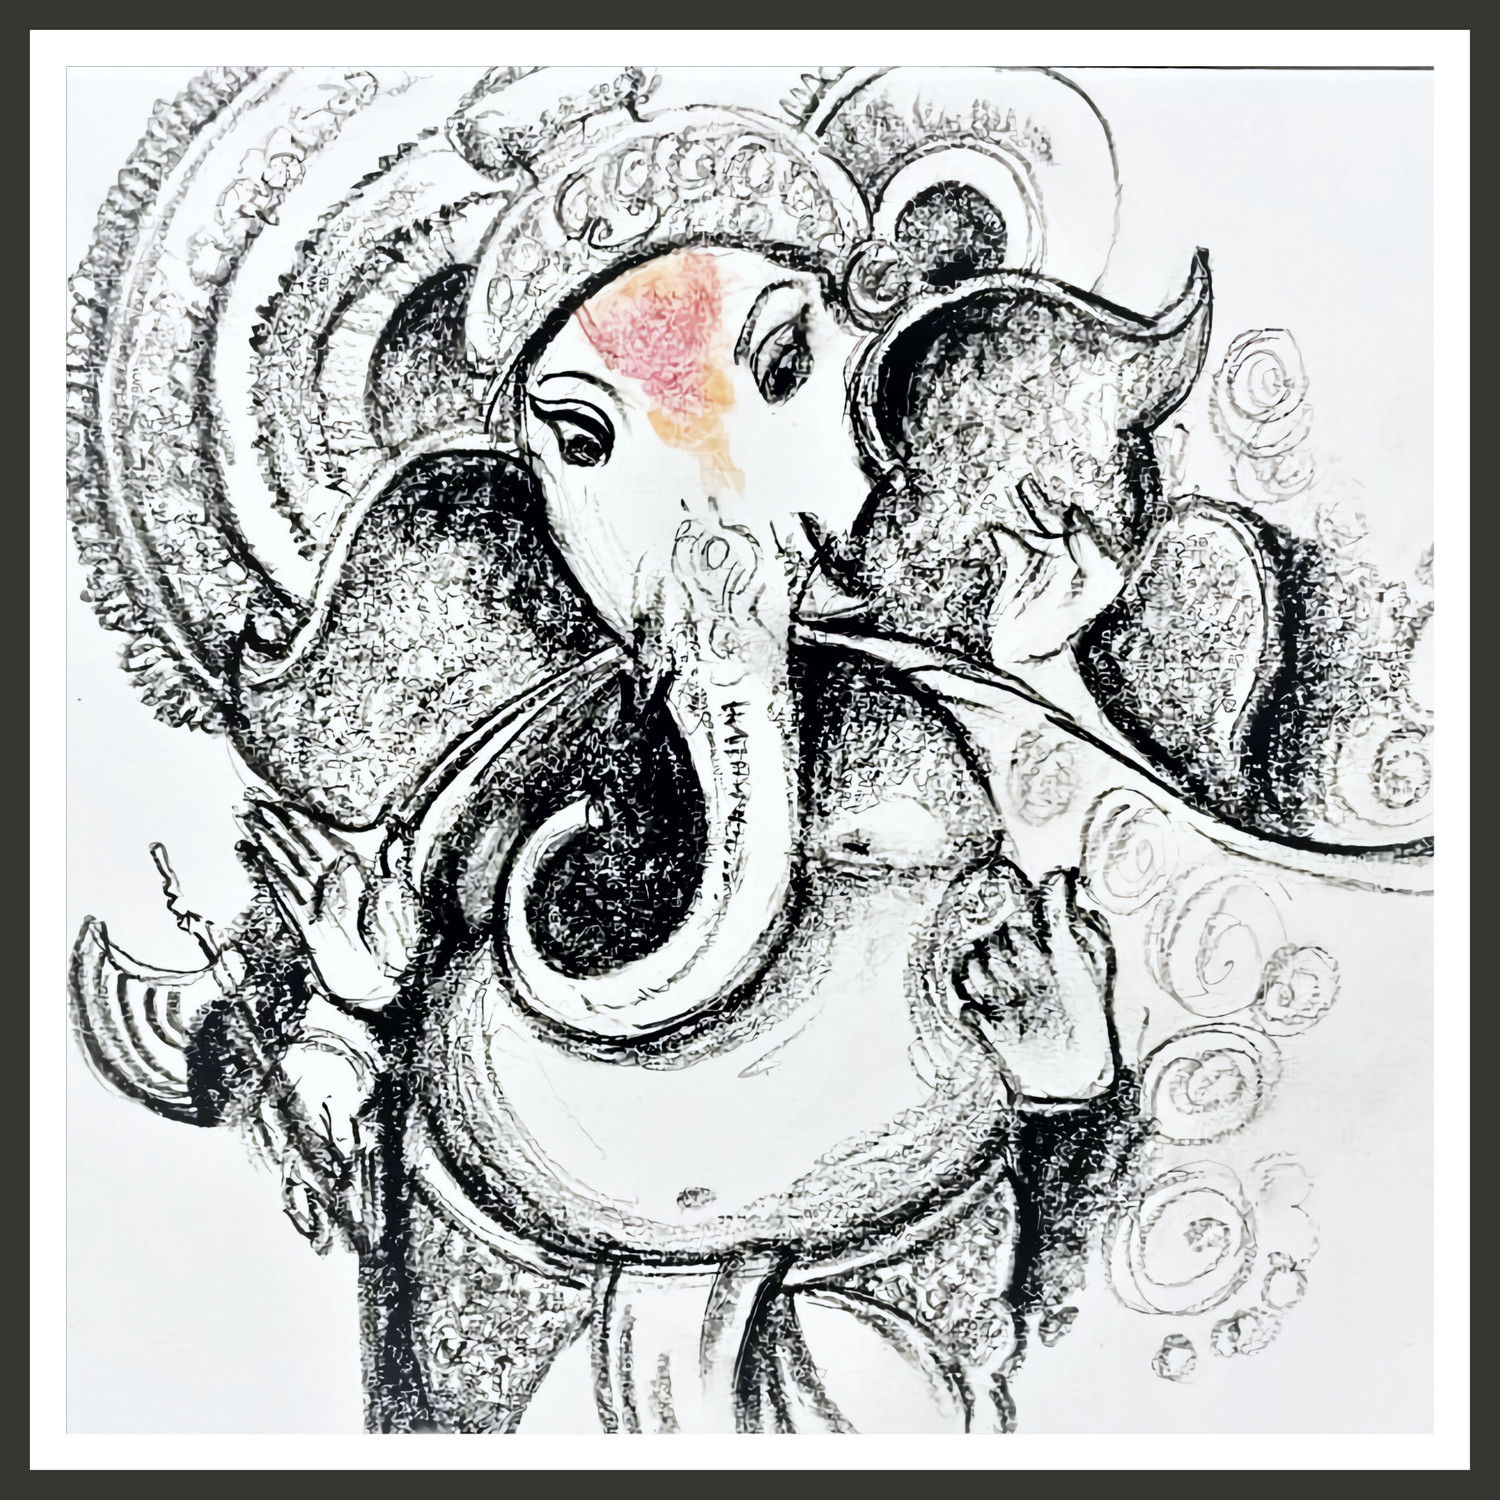 Bappa in Pencil Colours #ganpati #lord #god #ganesh #ganeshji #pencilcolors  #drawing #colors #hindu #hindugods Like | Hindu gods, Drawings, Art